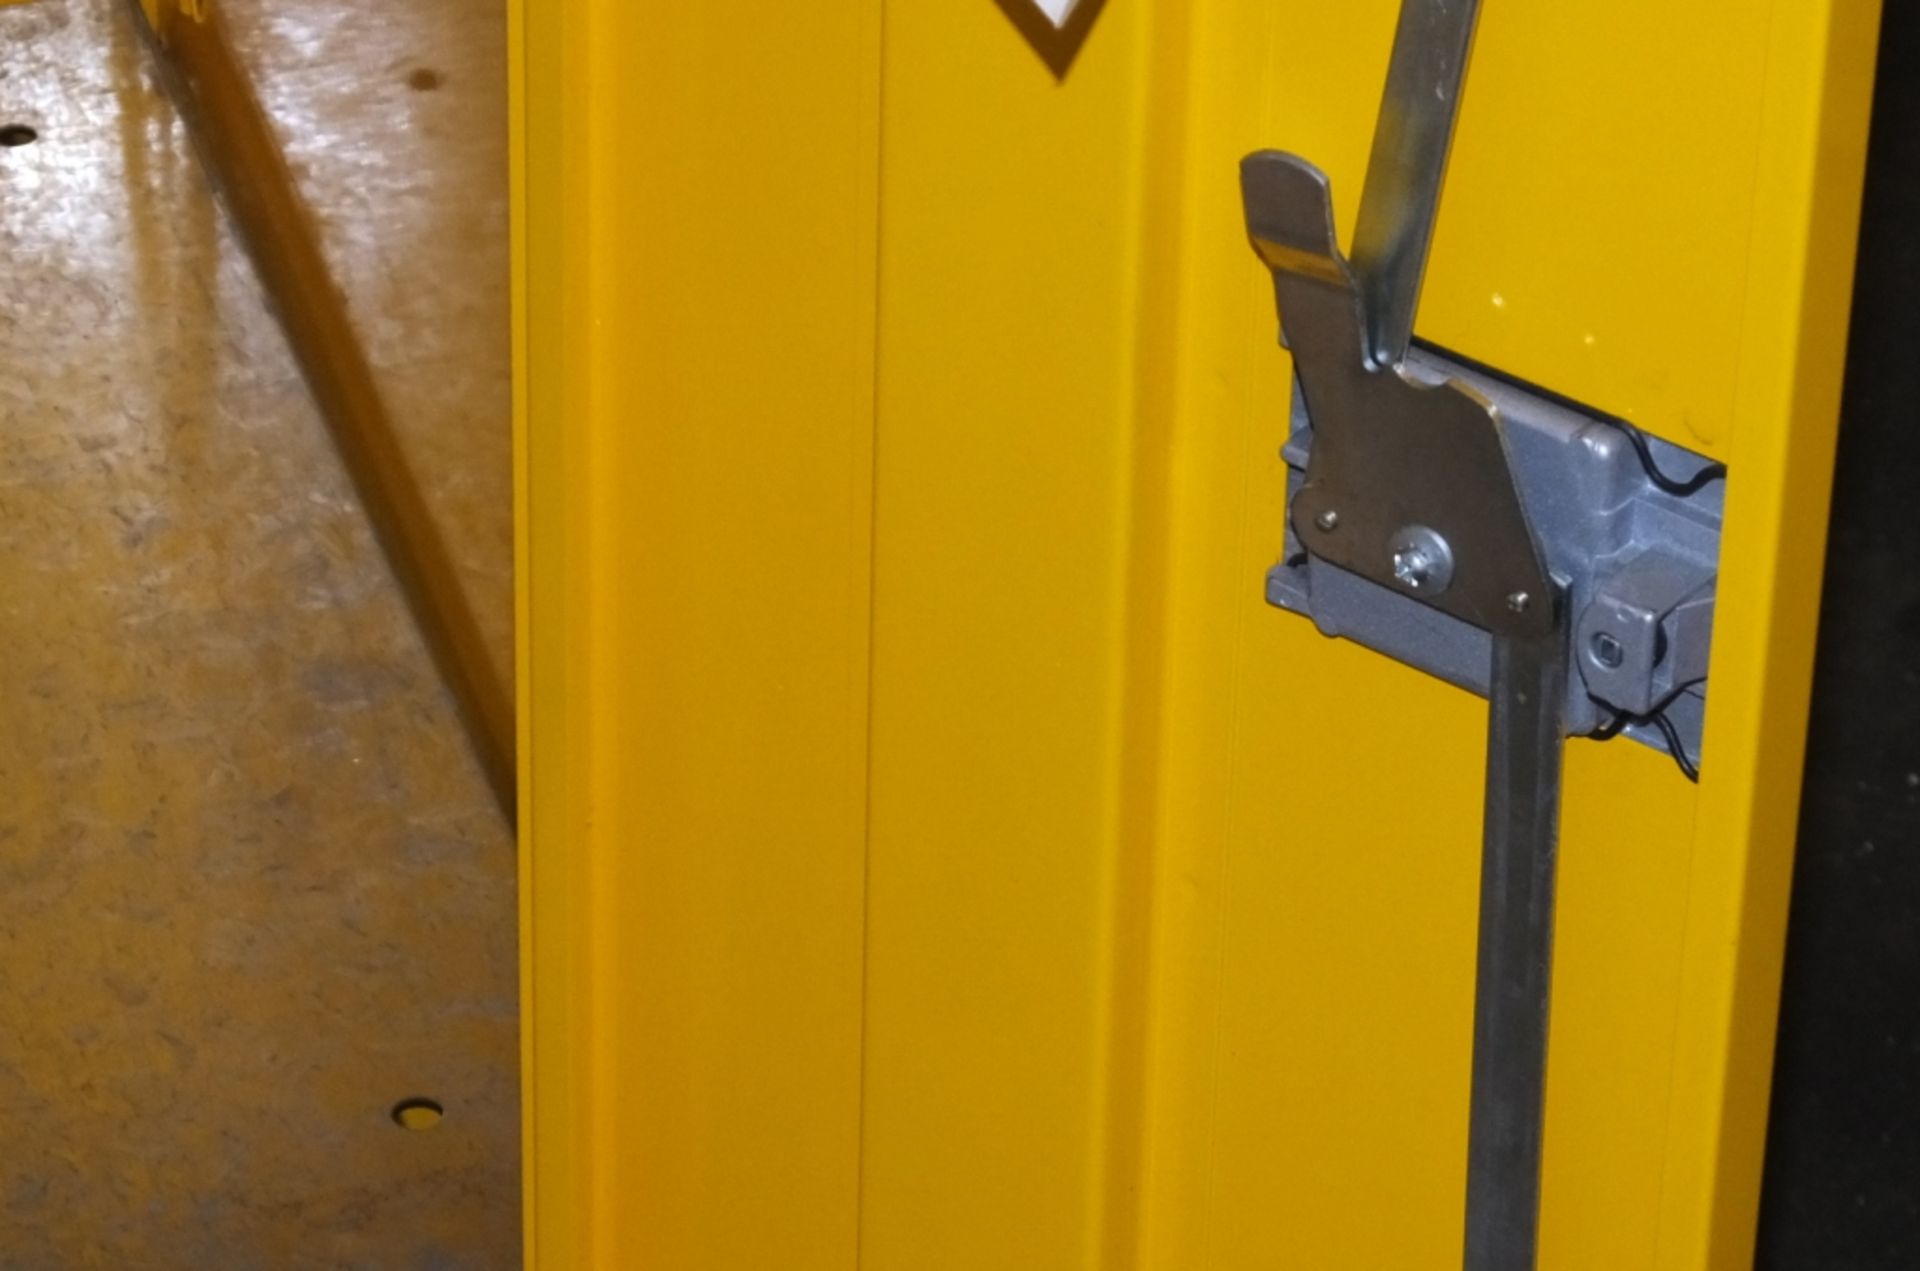 2 door lockable metal cabinet - 1 shelf - missing key - Image 4 of 4